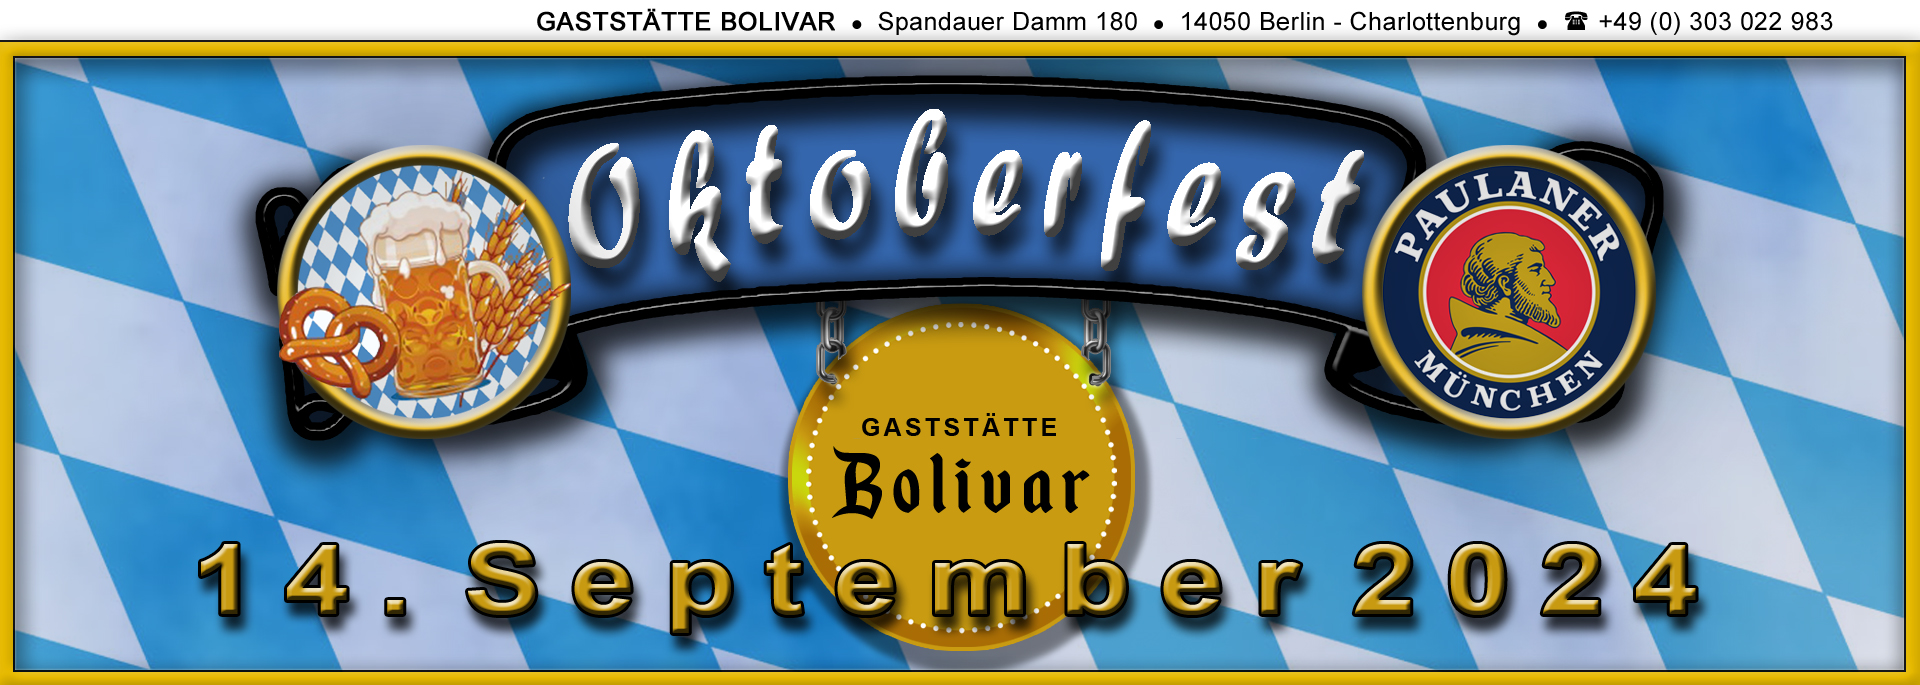 bolivar-berlin-charlottenburg-wilmersdorf-westend-spandau-siemensstadt-oktoberfest-14-09-2024